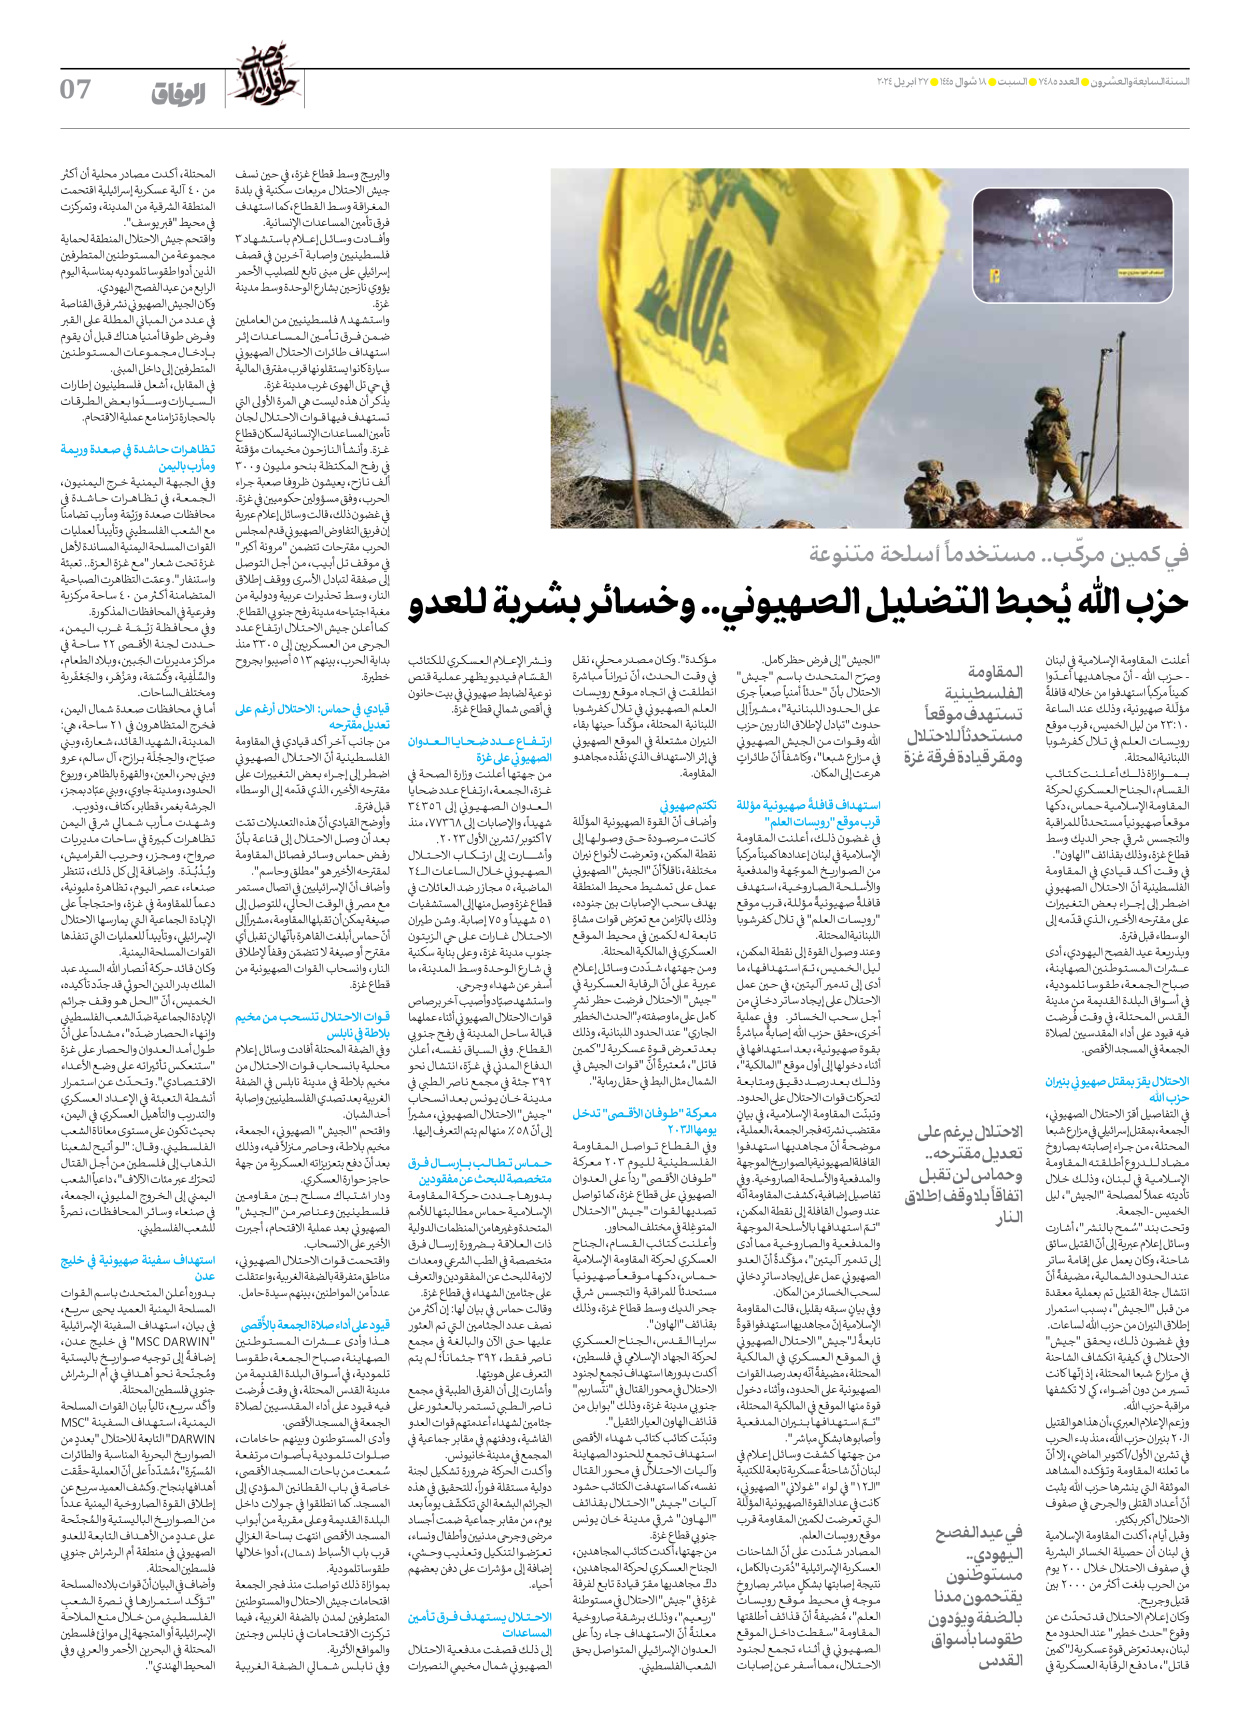 صحیفة ایران الدولیة الوفاق - العدد سبعة آلاف وأربعمائة وخمسة وثمانون - ٢٧ أبريل ٢٠٢٤ - الصفحة ۷